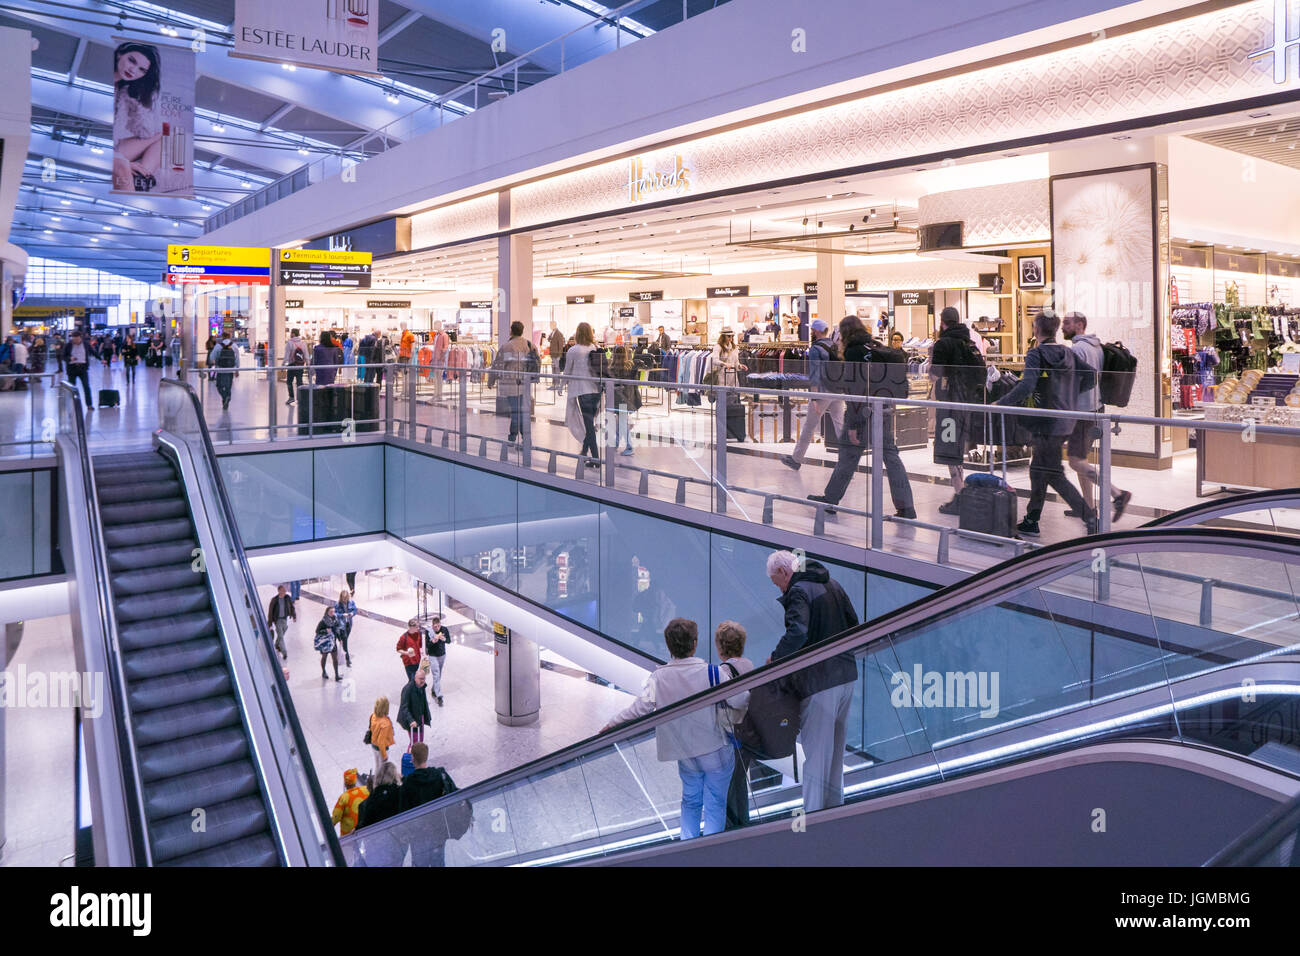 Heathrow Airport Terminal 5 Retail - Louis Vuitton Stock Photo - Alamy